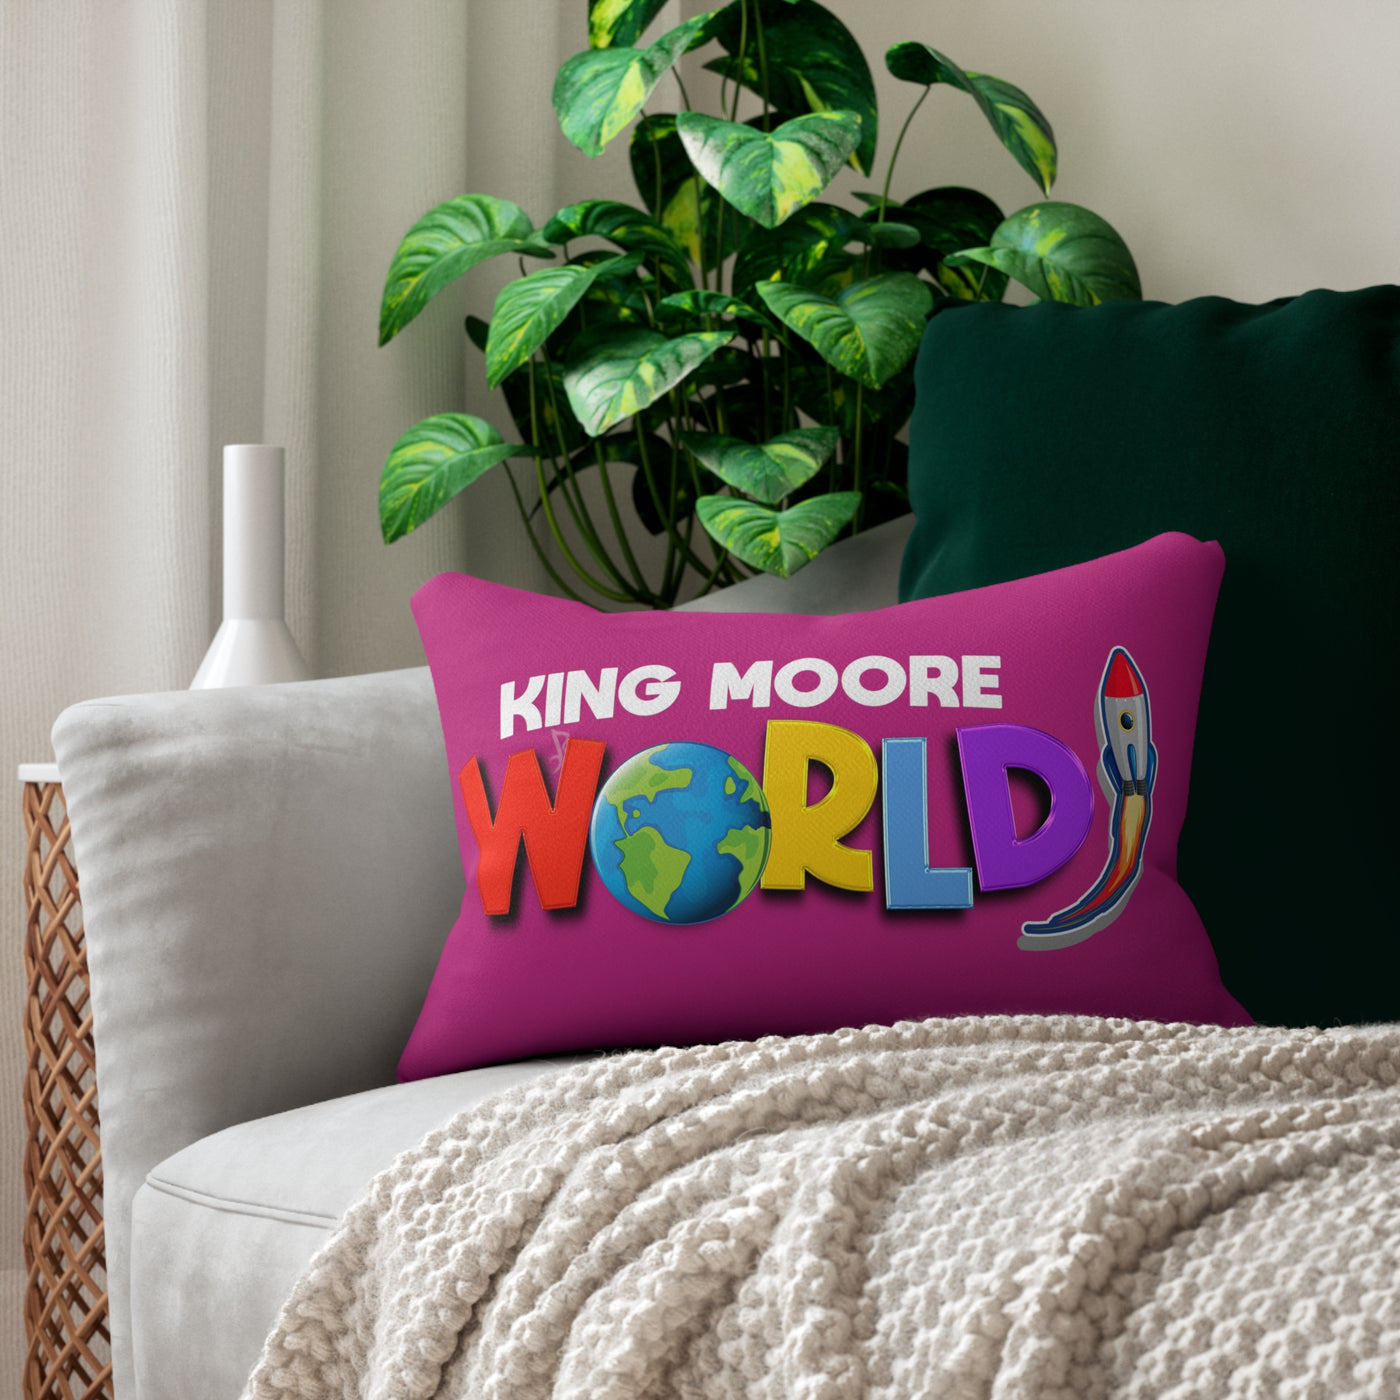 King Moore World Lumbar Pillow (Pink)